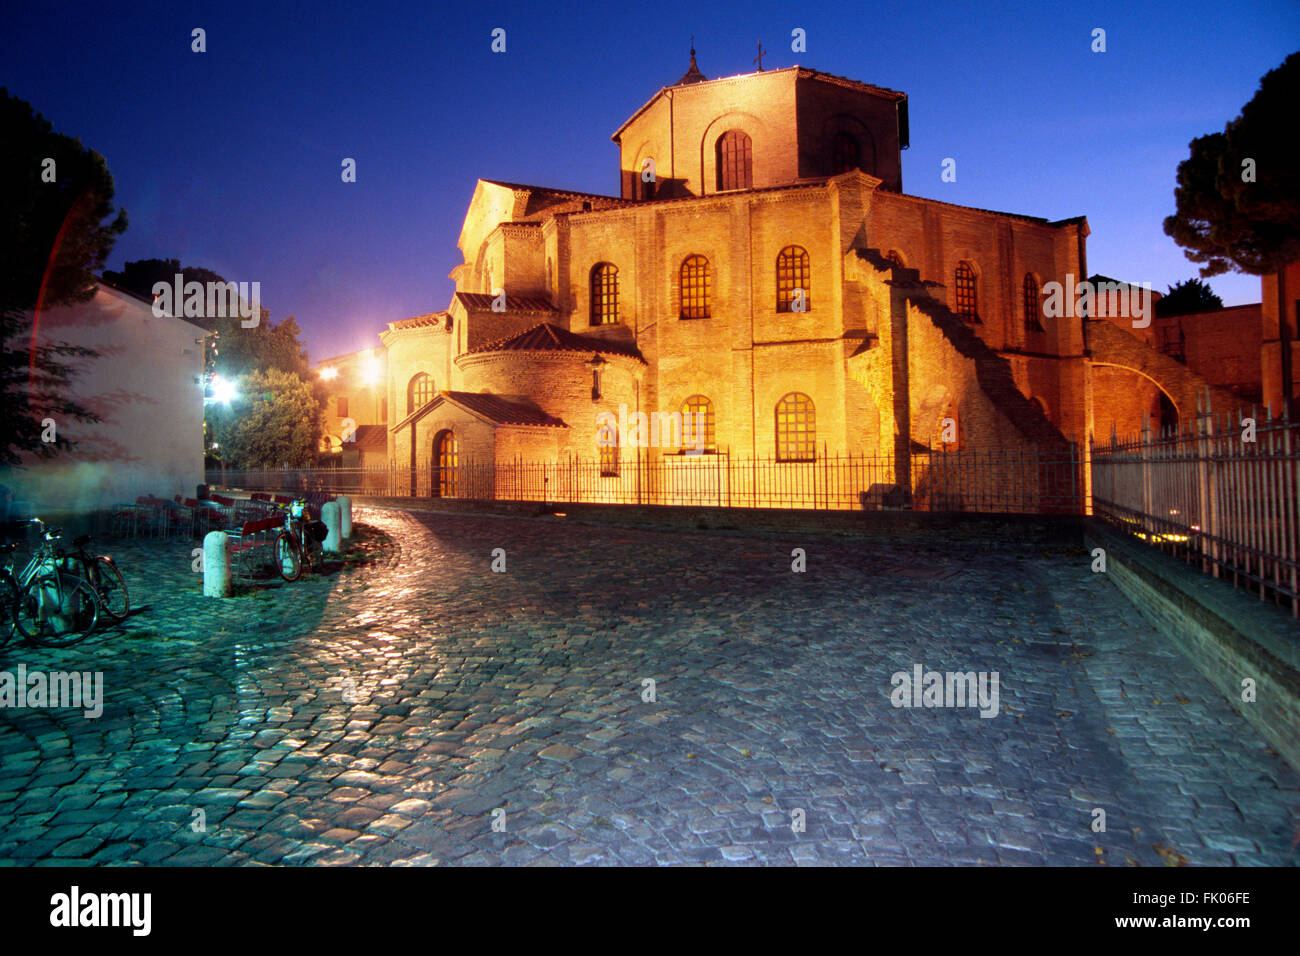 Italy, Emilia Romagna, Ravenna, San Vitale Basilica Stock Photo